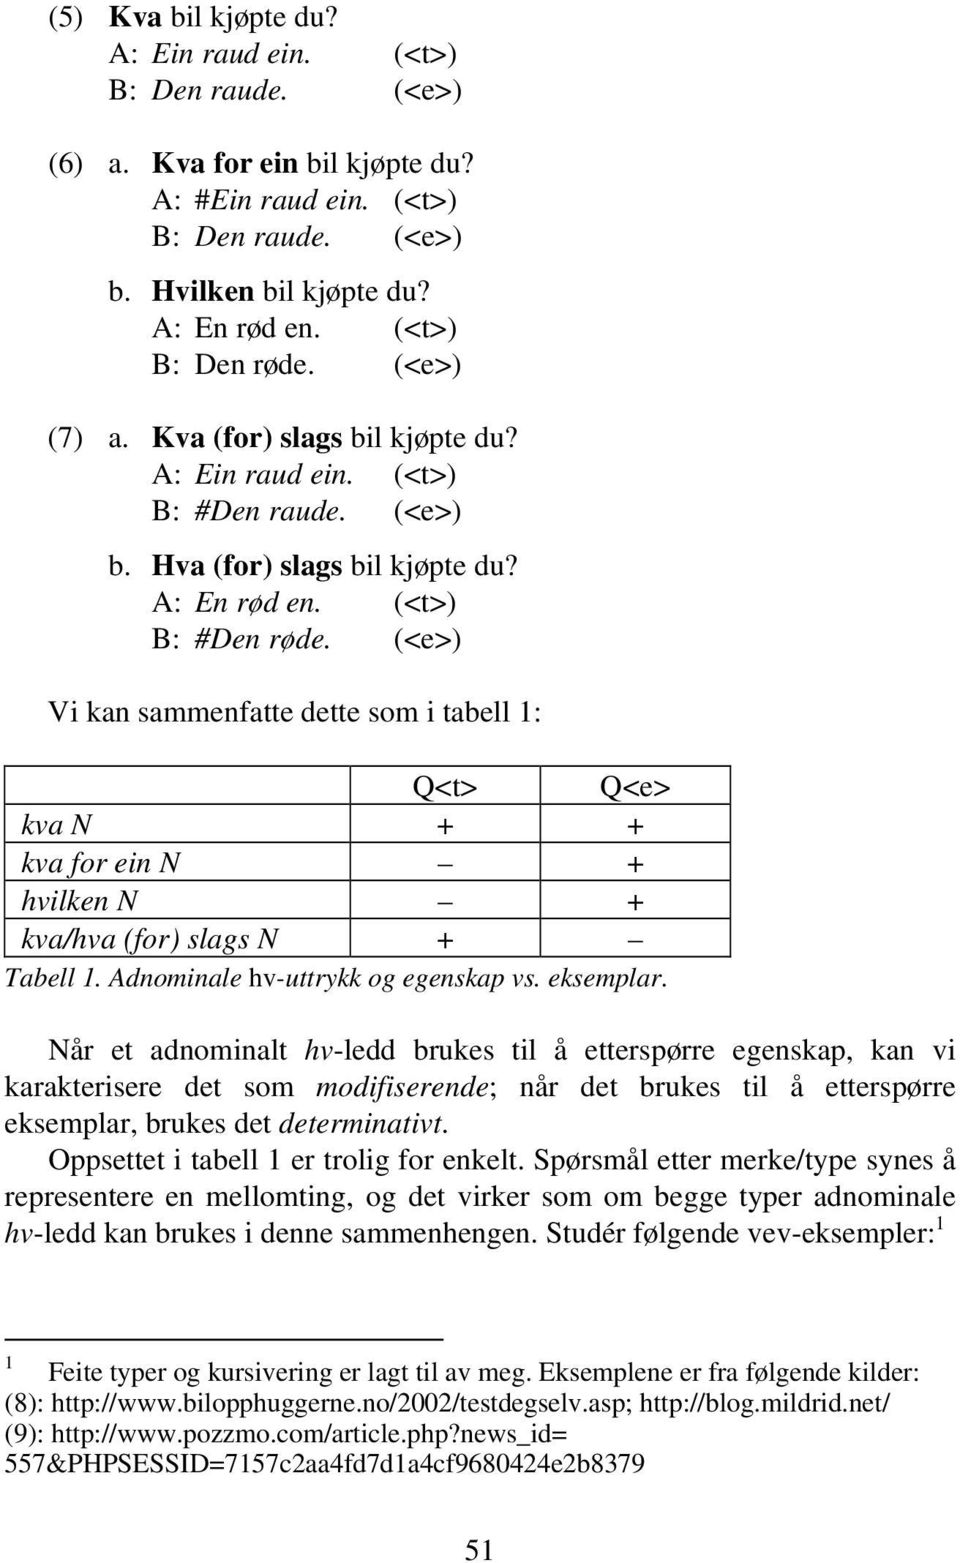 (<e>) Vi kan sammenfatte dette som i tabell 1: Q<t> Q<e> kva N + + kva for ein N + hvilken N + kva/hva (for) slags N + Tabell 1. Adnominale hv-uttrykk og egenskap vs. eksemplar.